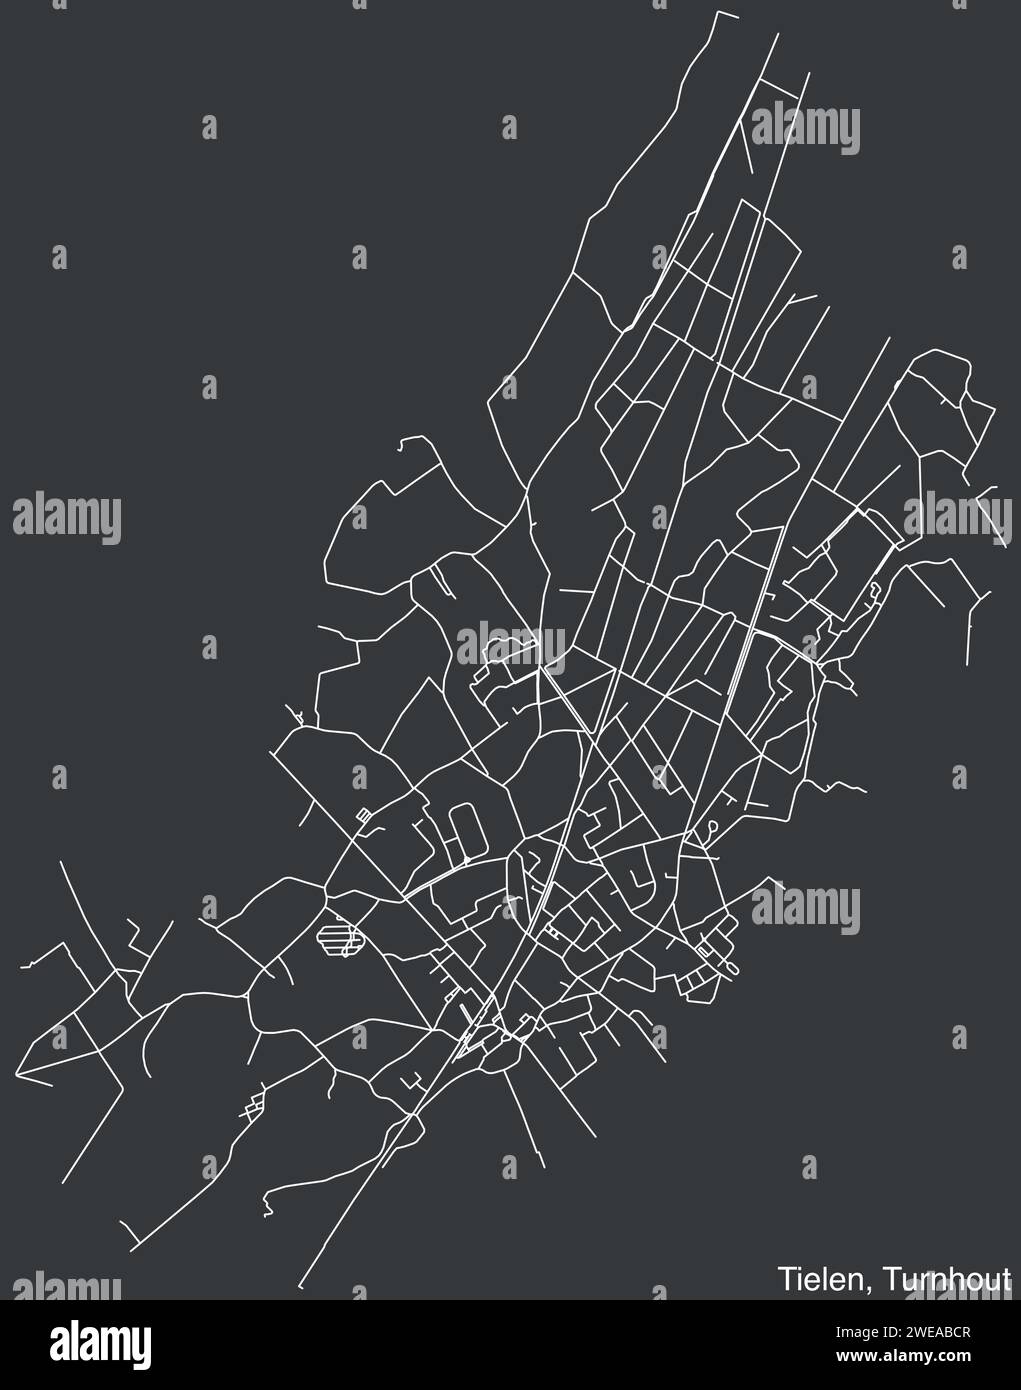 Cartina stradale del COMUNE TIELEN, TURNHOUT Illustrazione Vettoriale